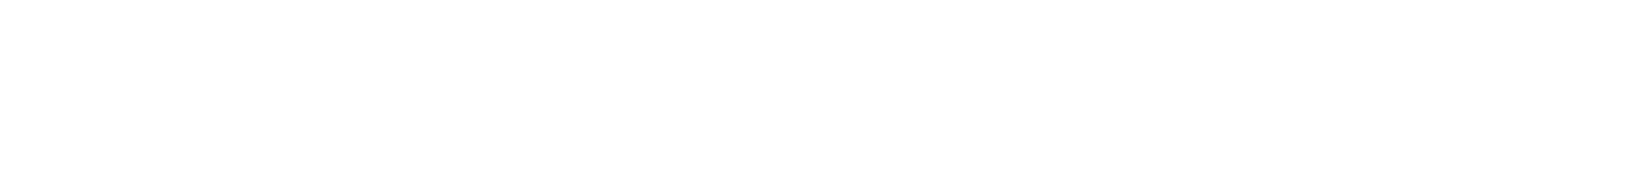 Logo Blickwinkel Potential Positionierung